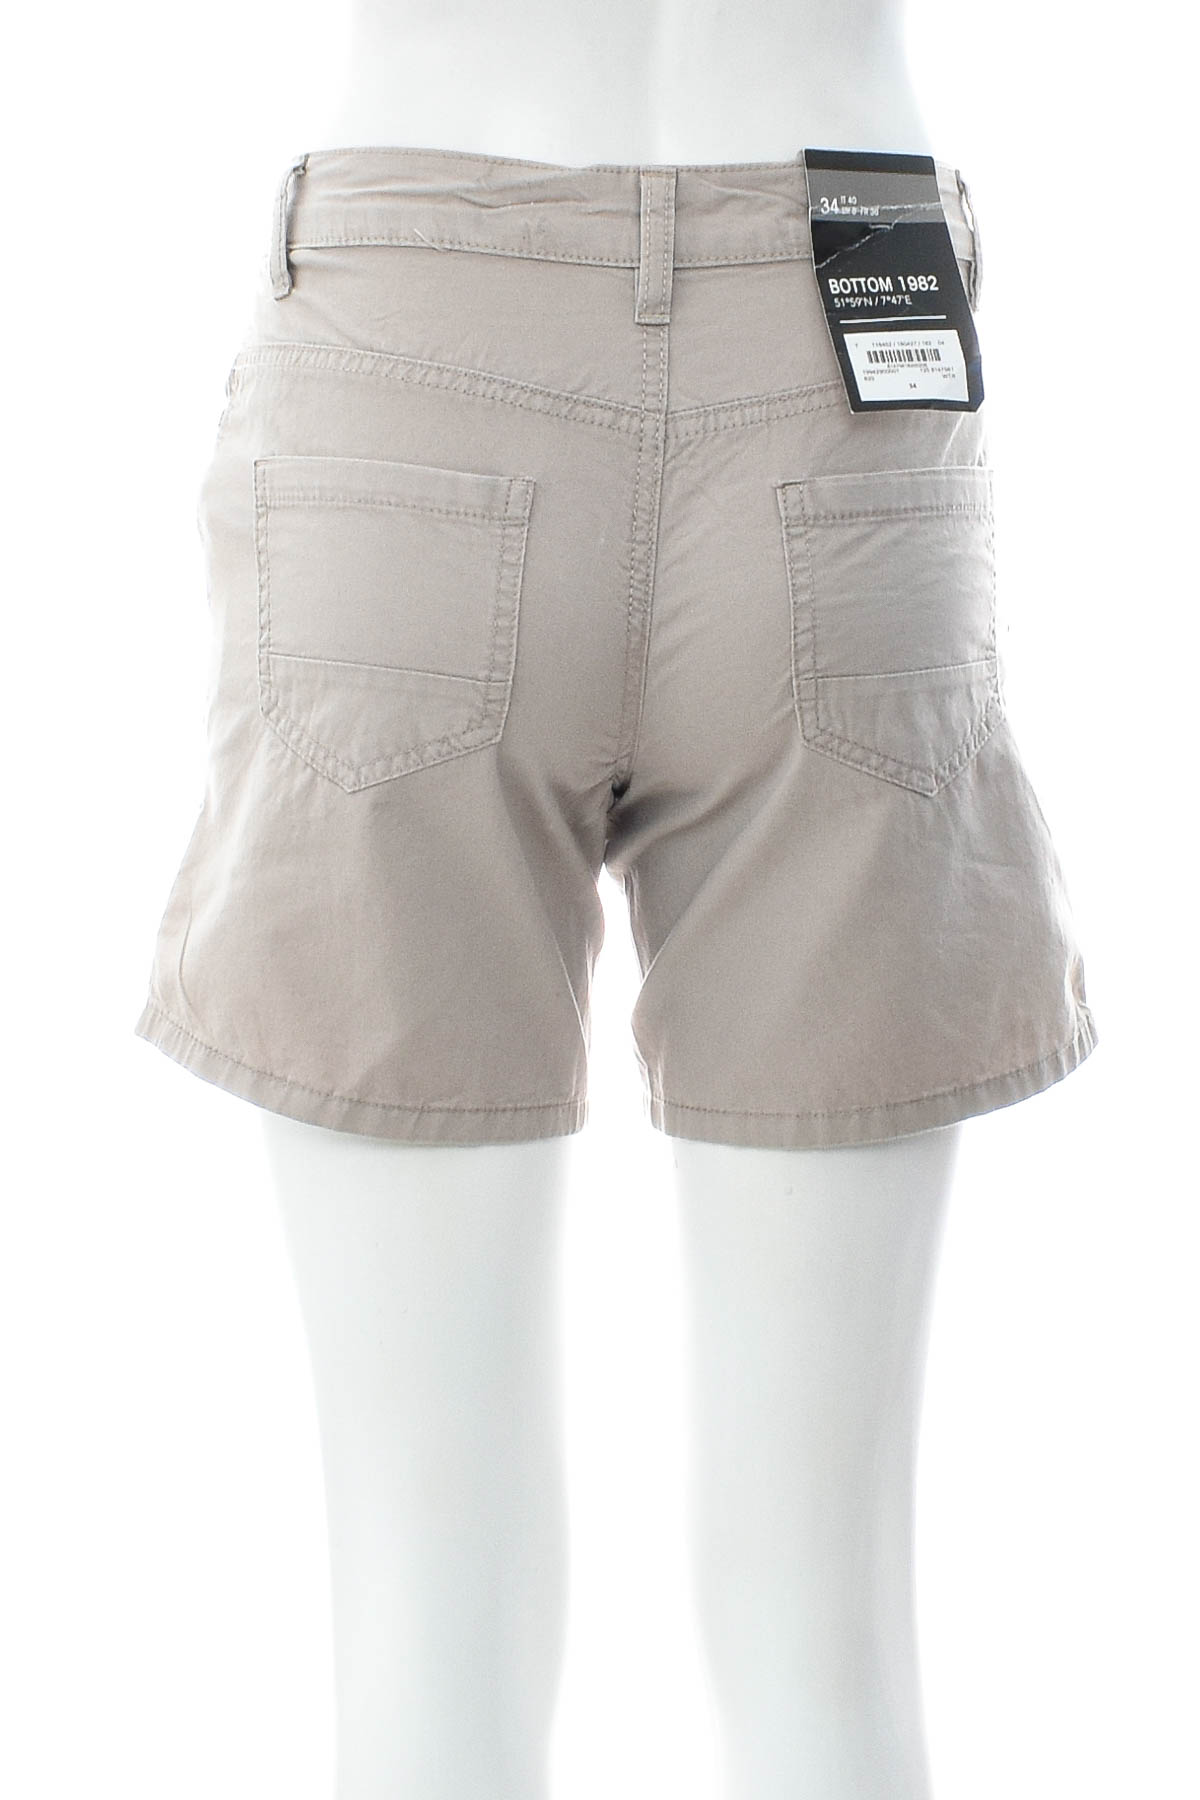 Γυναικείο κοντό παντελόνι - Bottom 1982 - 1